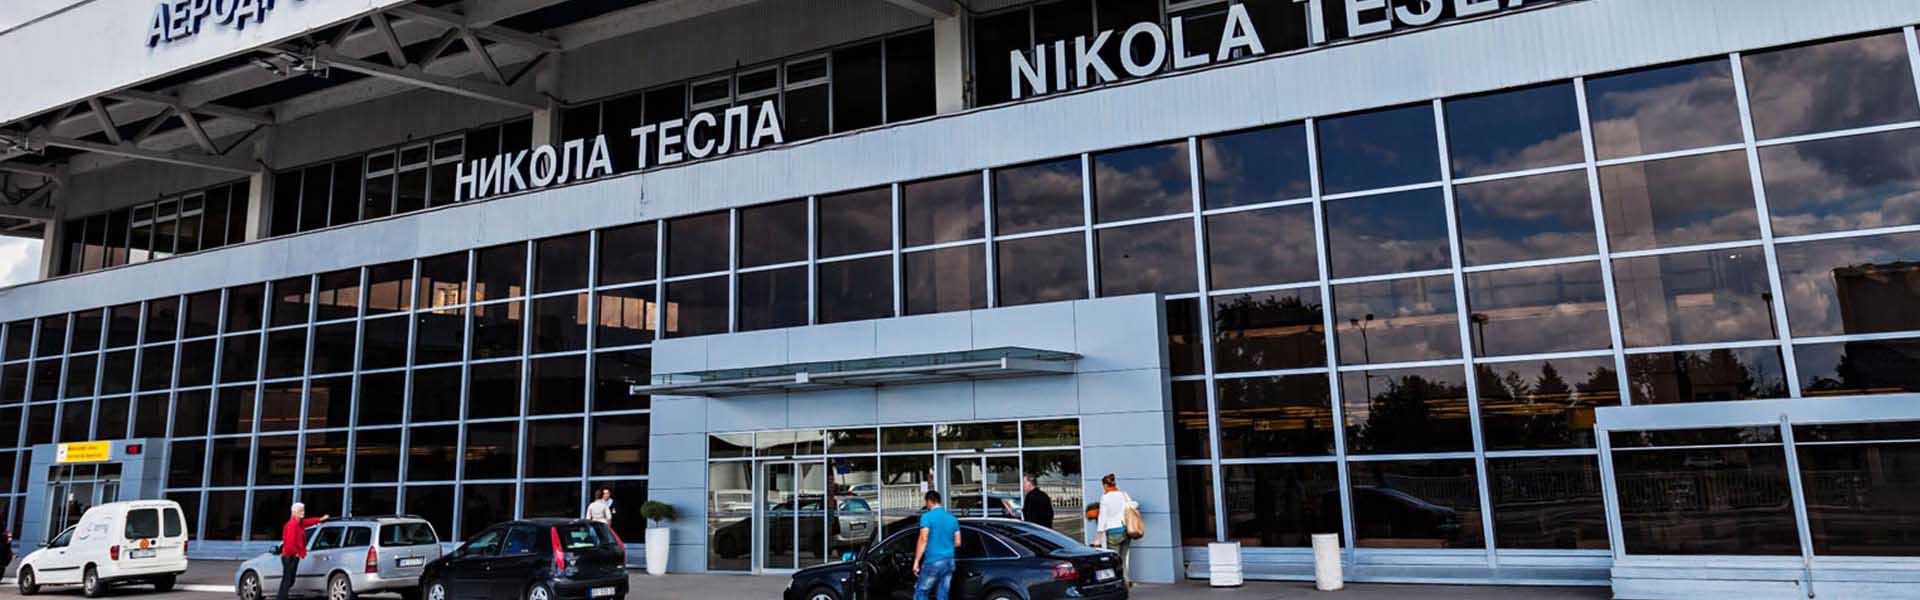 Rent a car Belgrade Flughafen